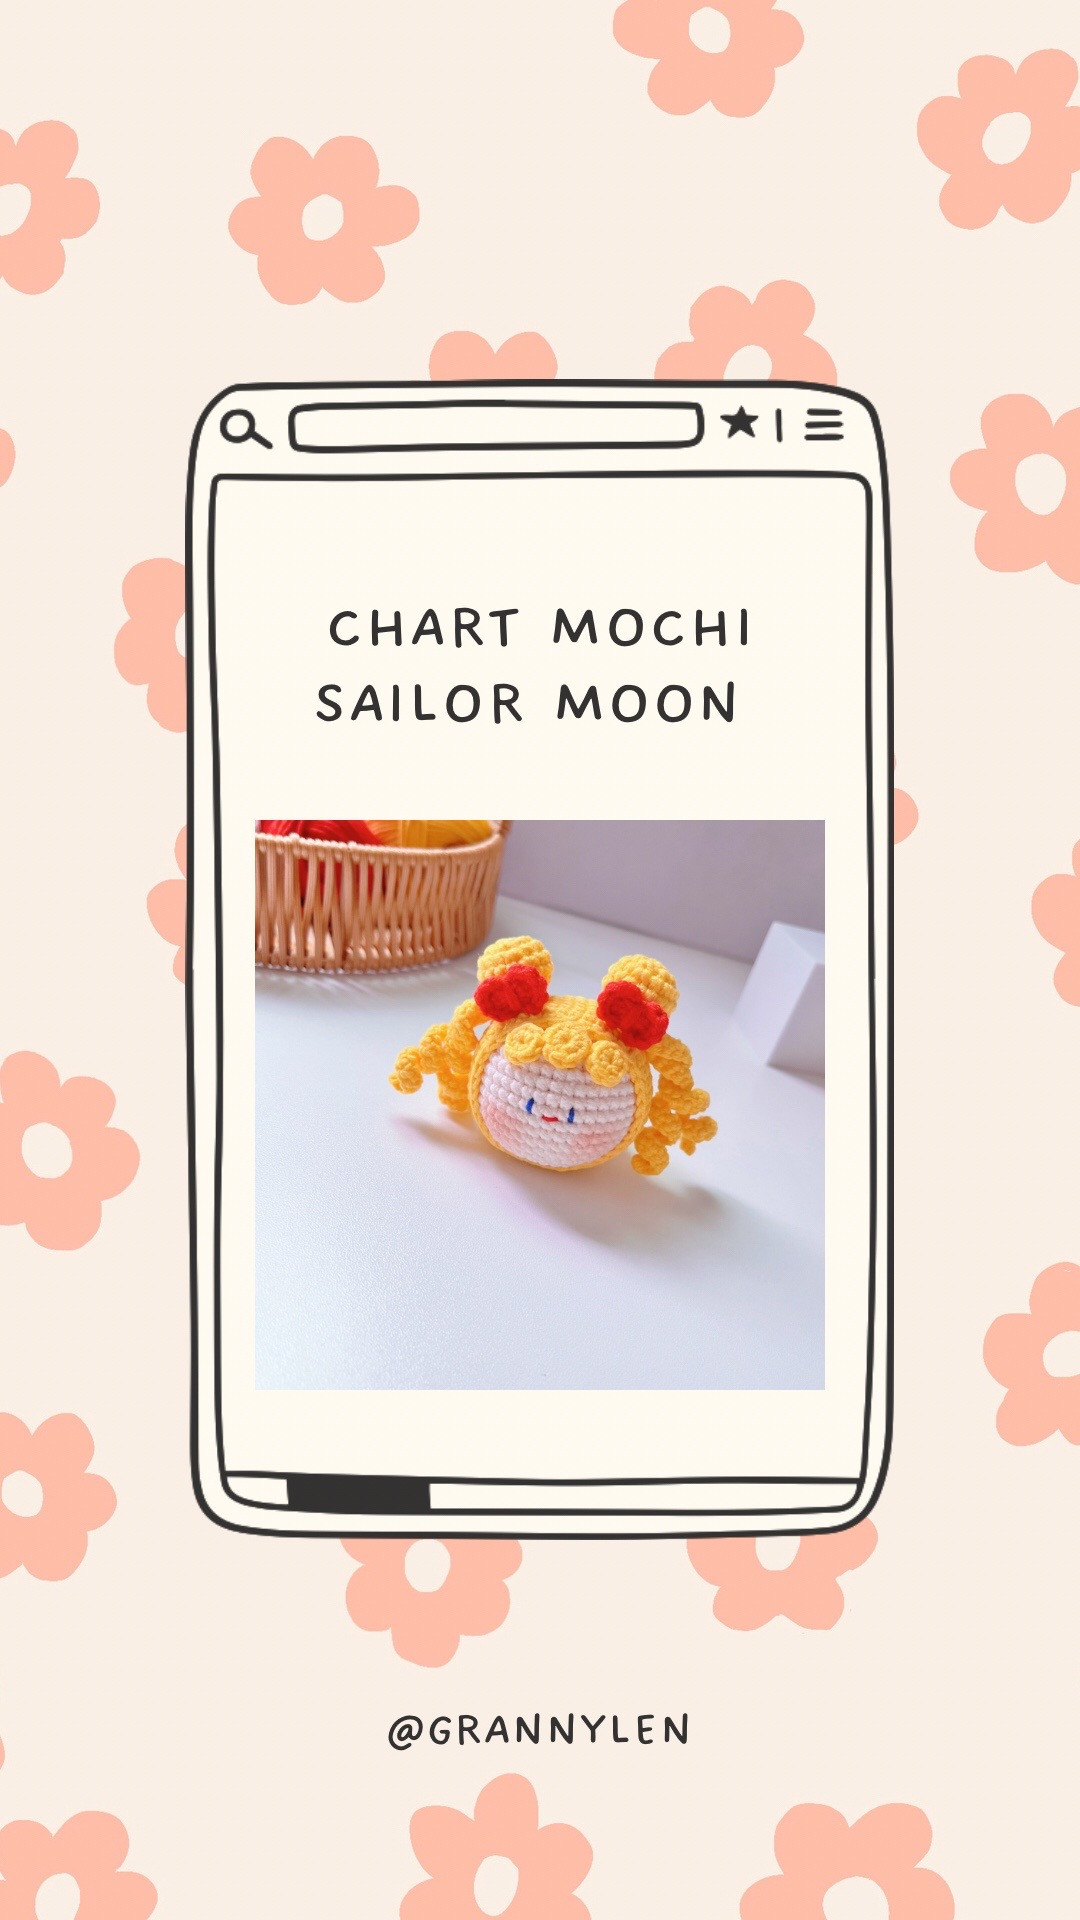 Chart mochi sailor moon